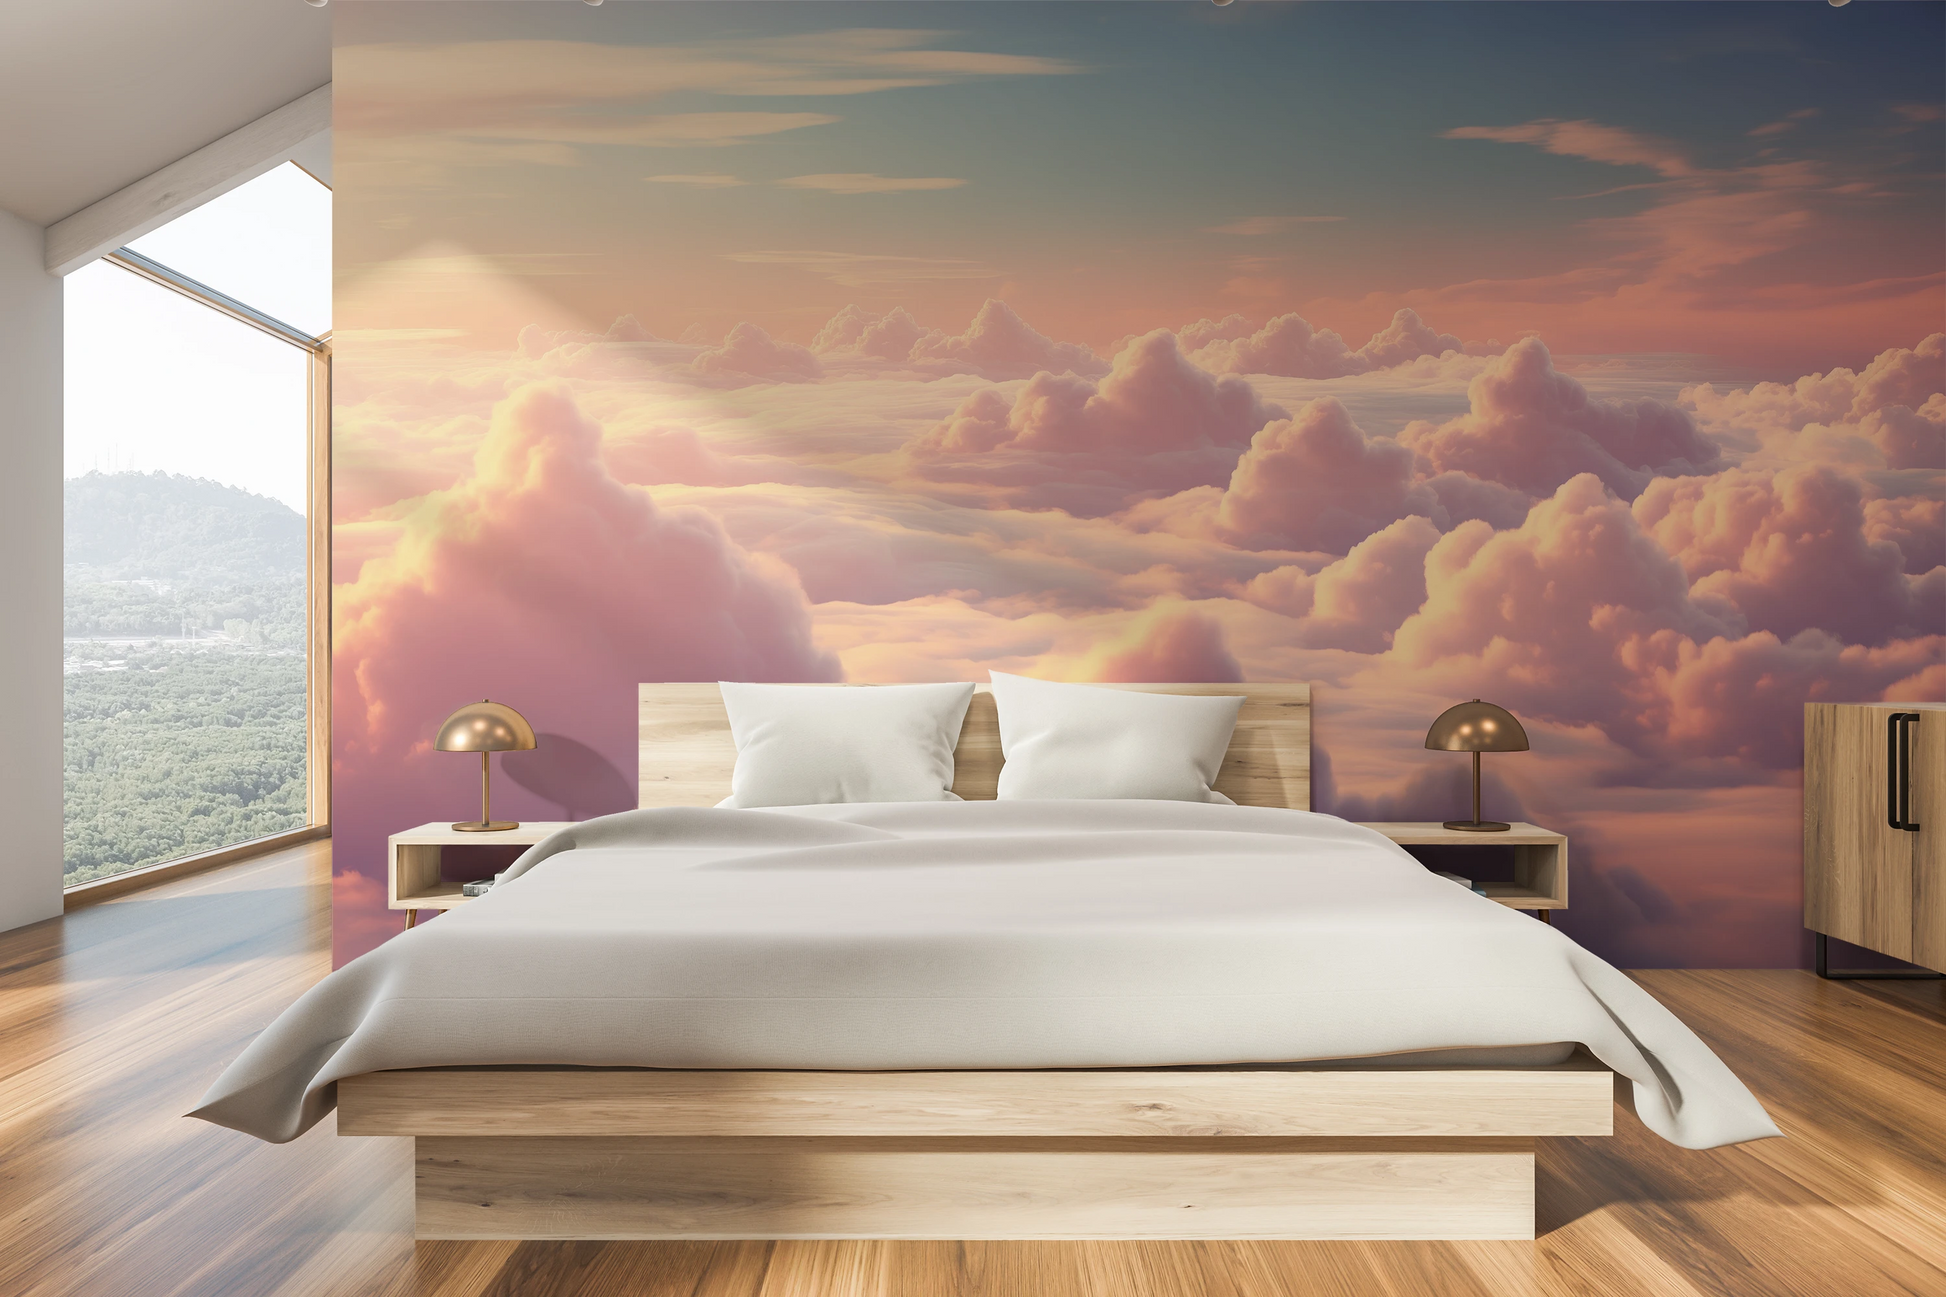 Wzór fototapety o nazwie Heavenly Dawn pokazanej w kontekście pomieszczenia.